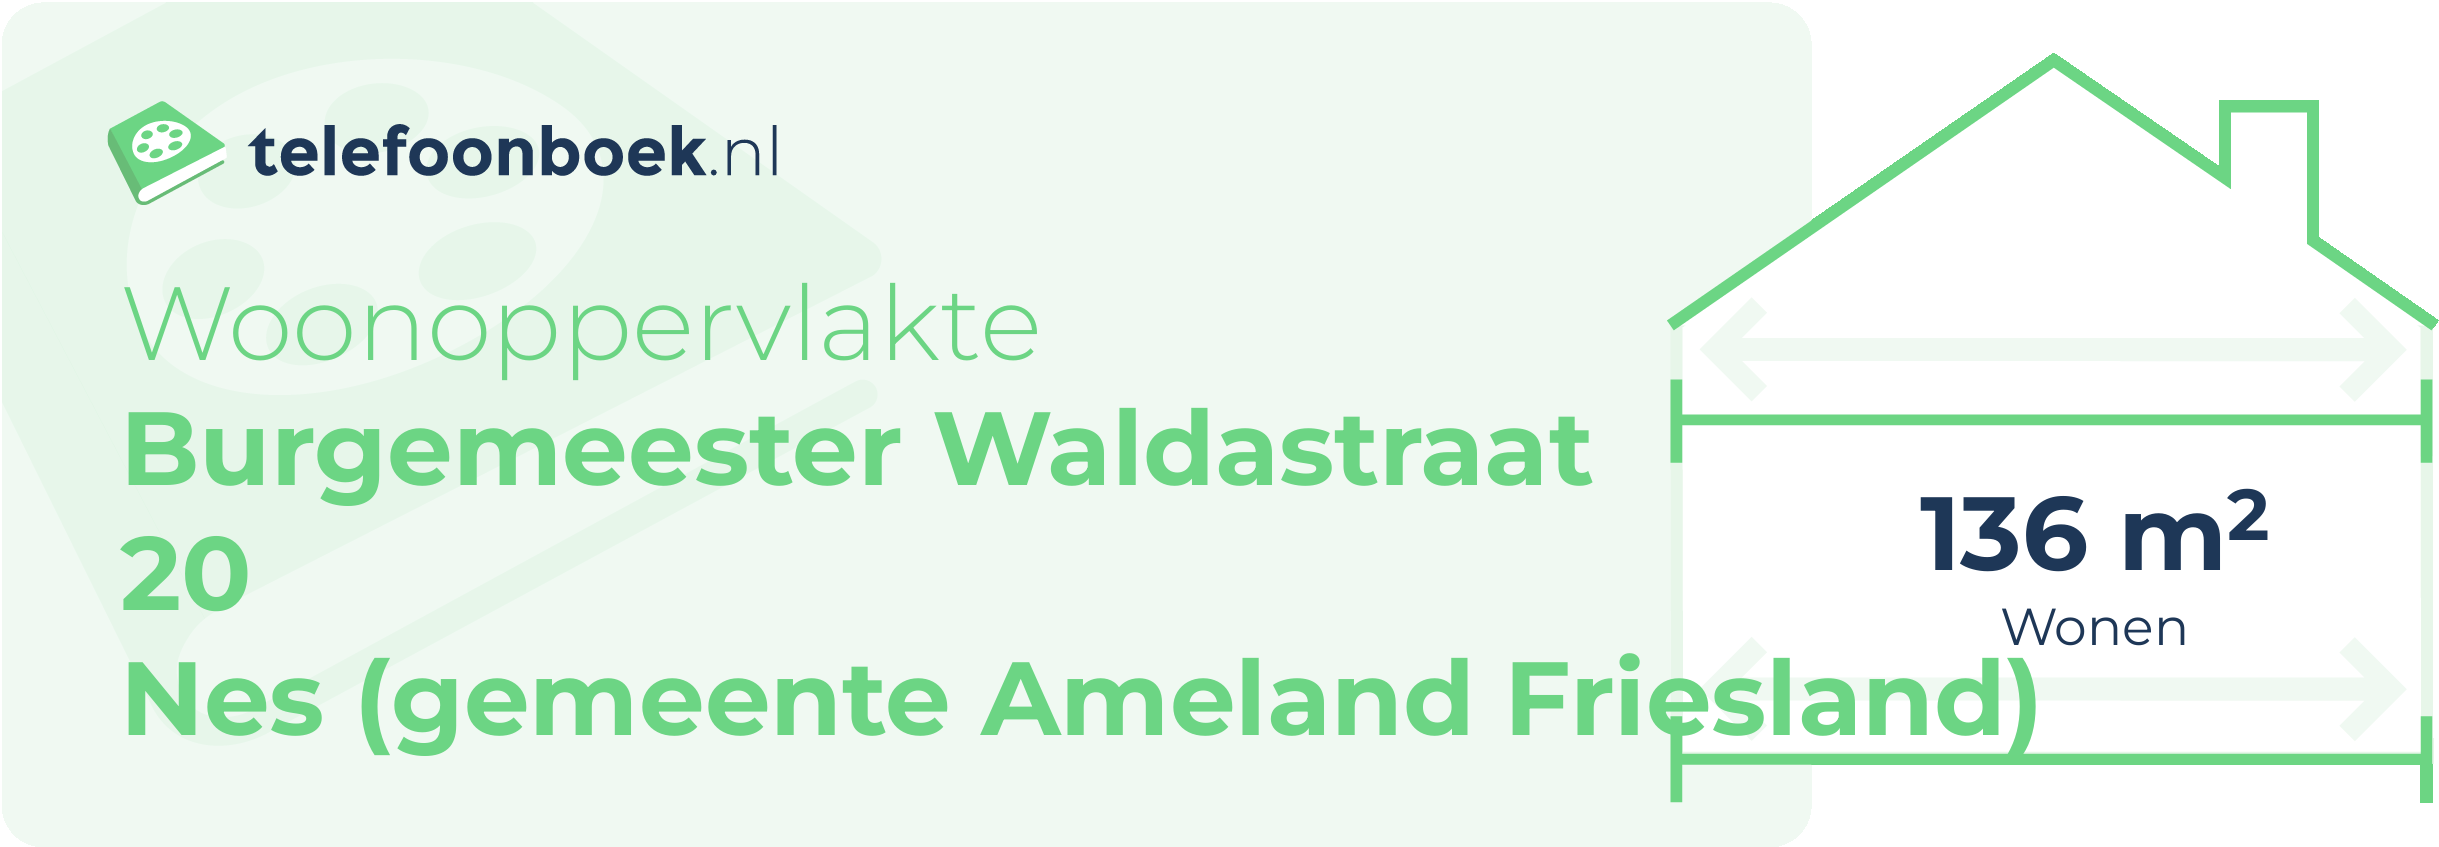 Woonoppervlakte Burgemeester Waldastraat 20 Nes (gemeente Ameland Friesland)